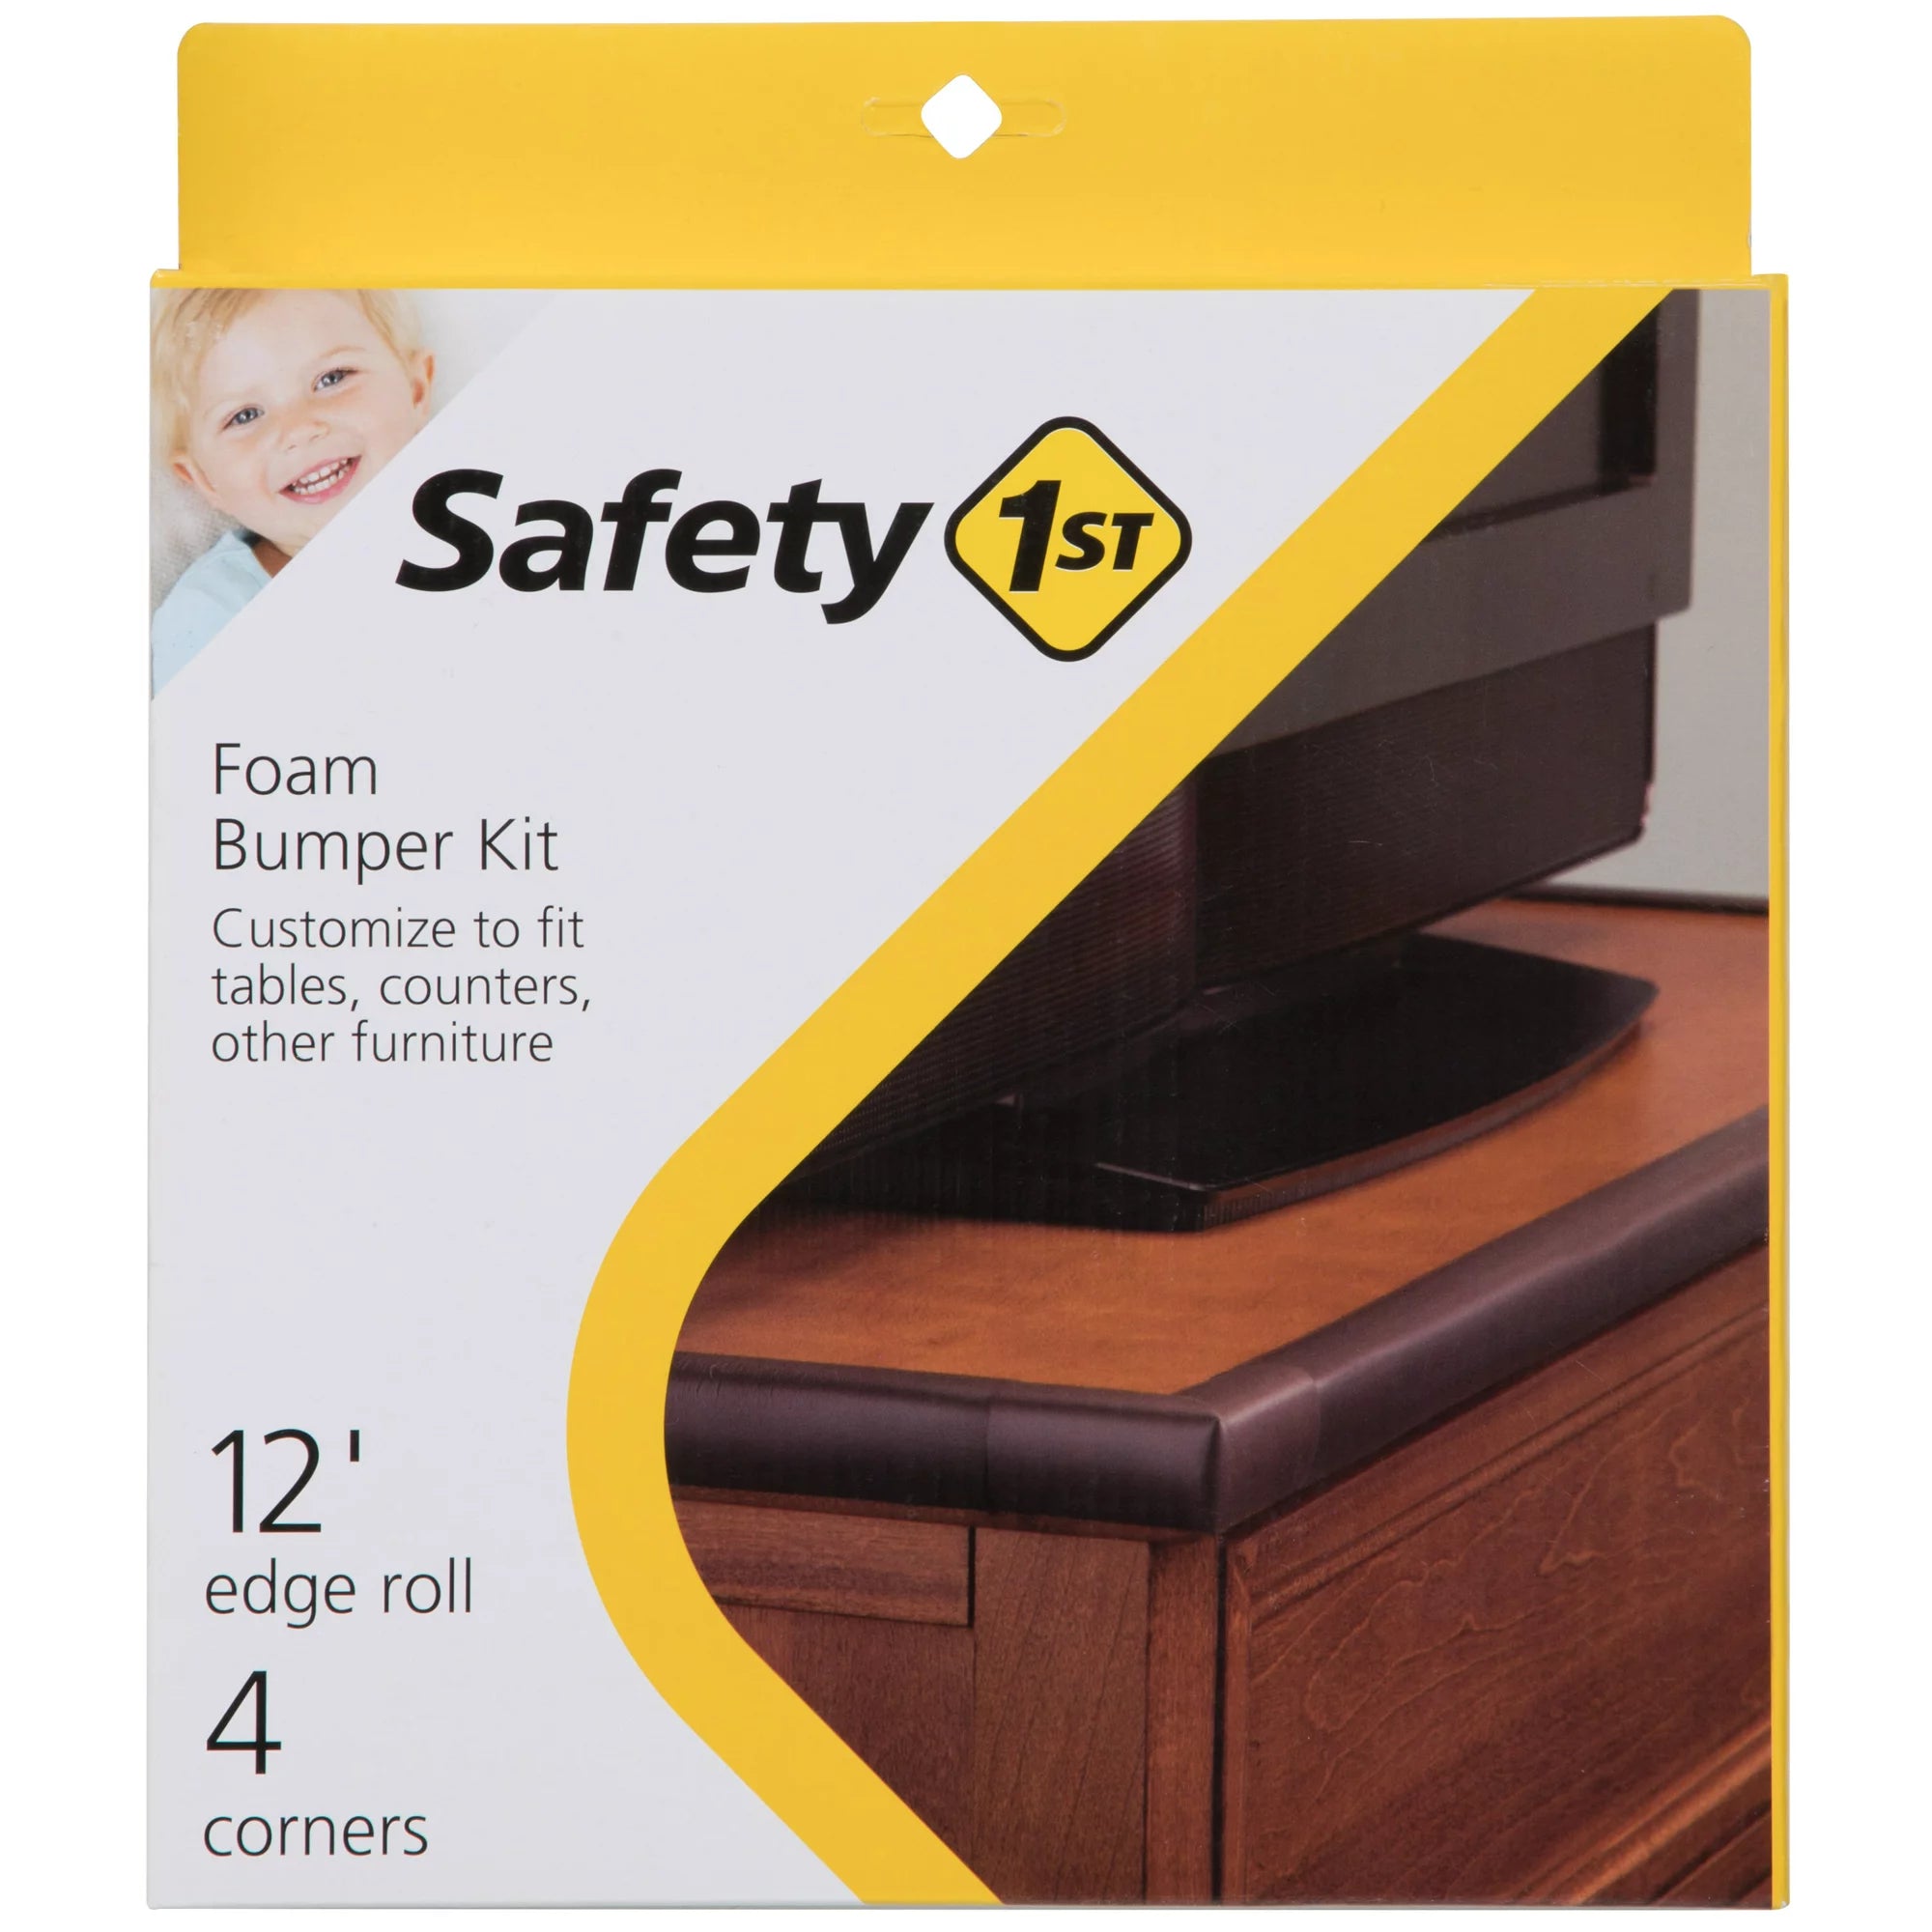 Safety 1st Safety Essentials Kit